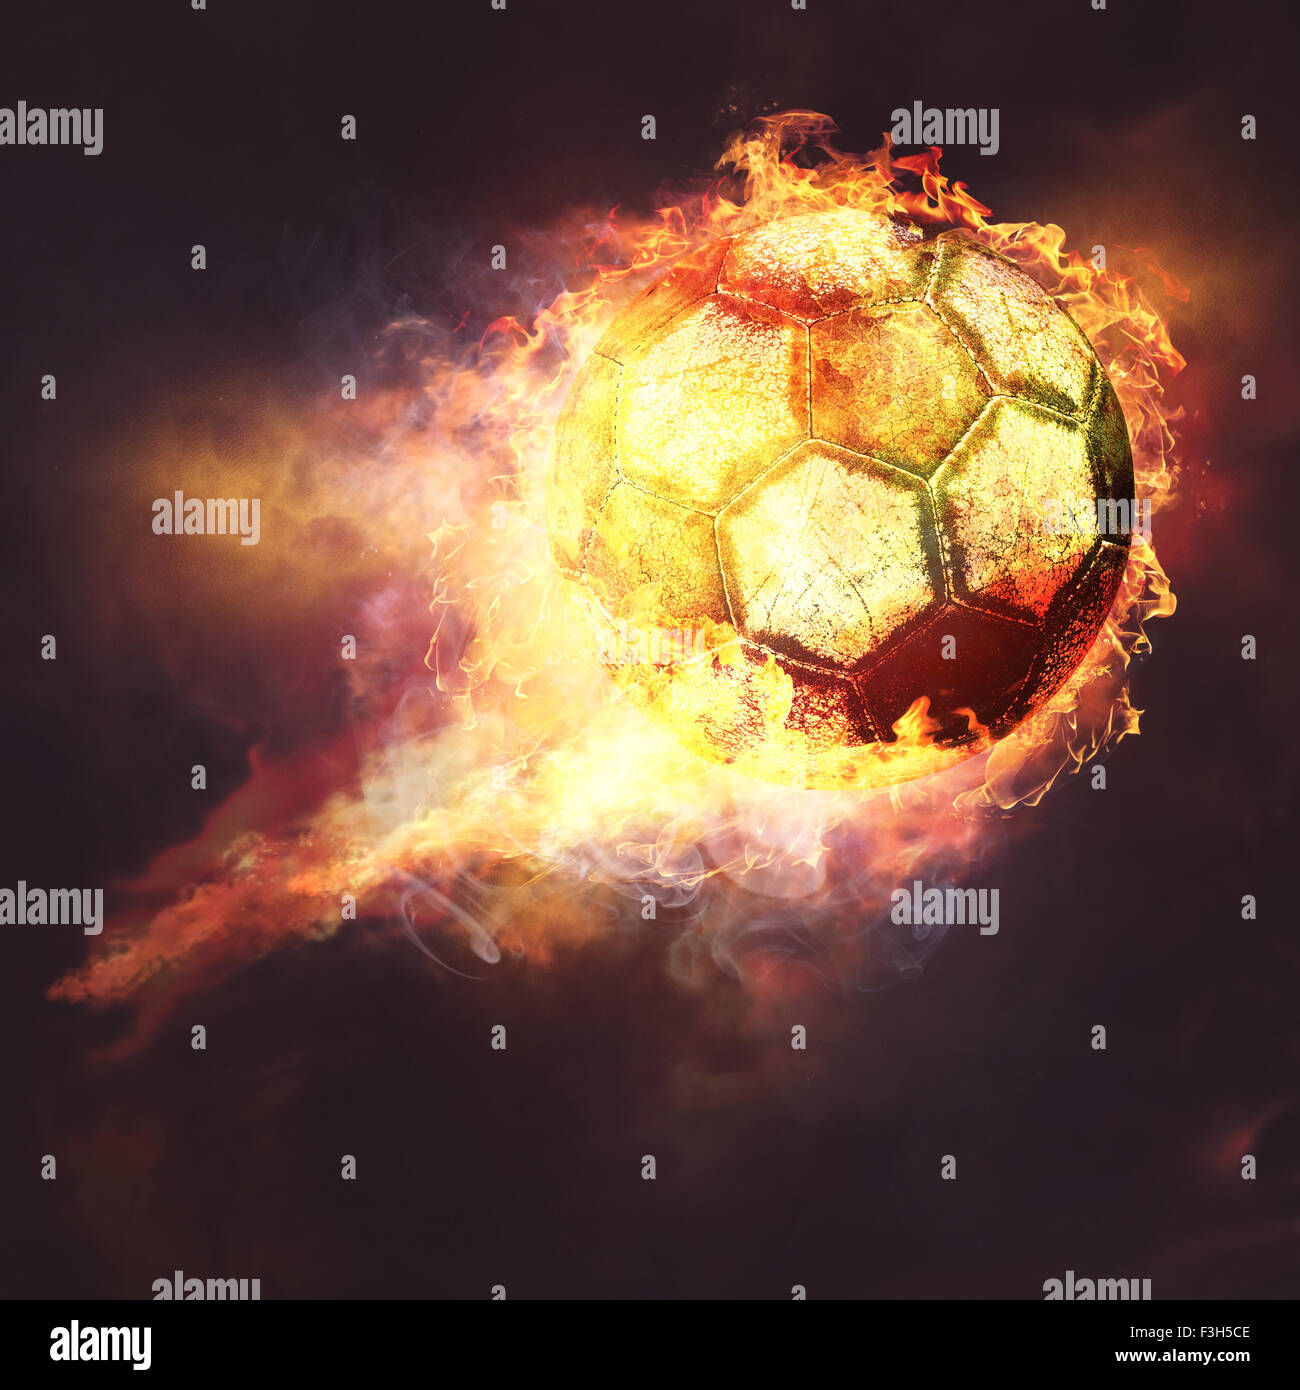 Sfondi di calcio immagini e fotografie stock ad alta risoluzione - Alamy